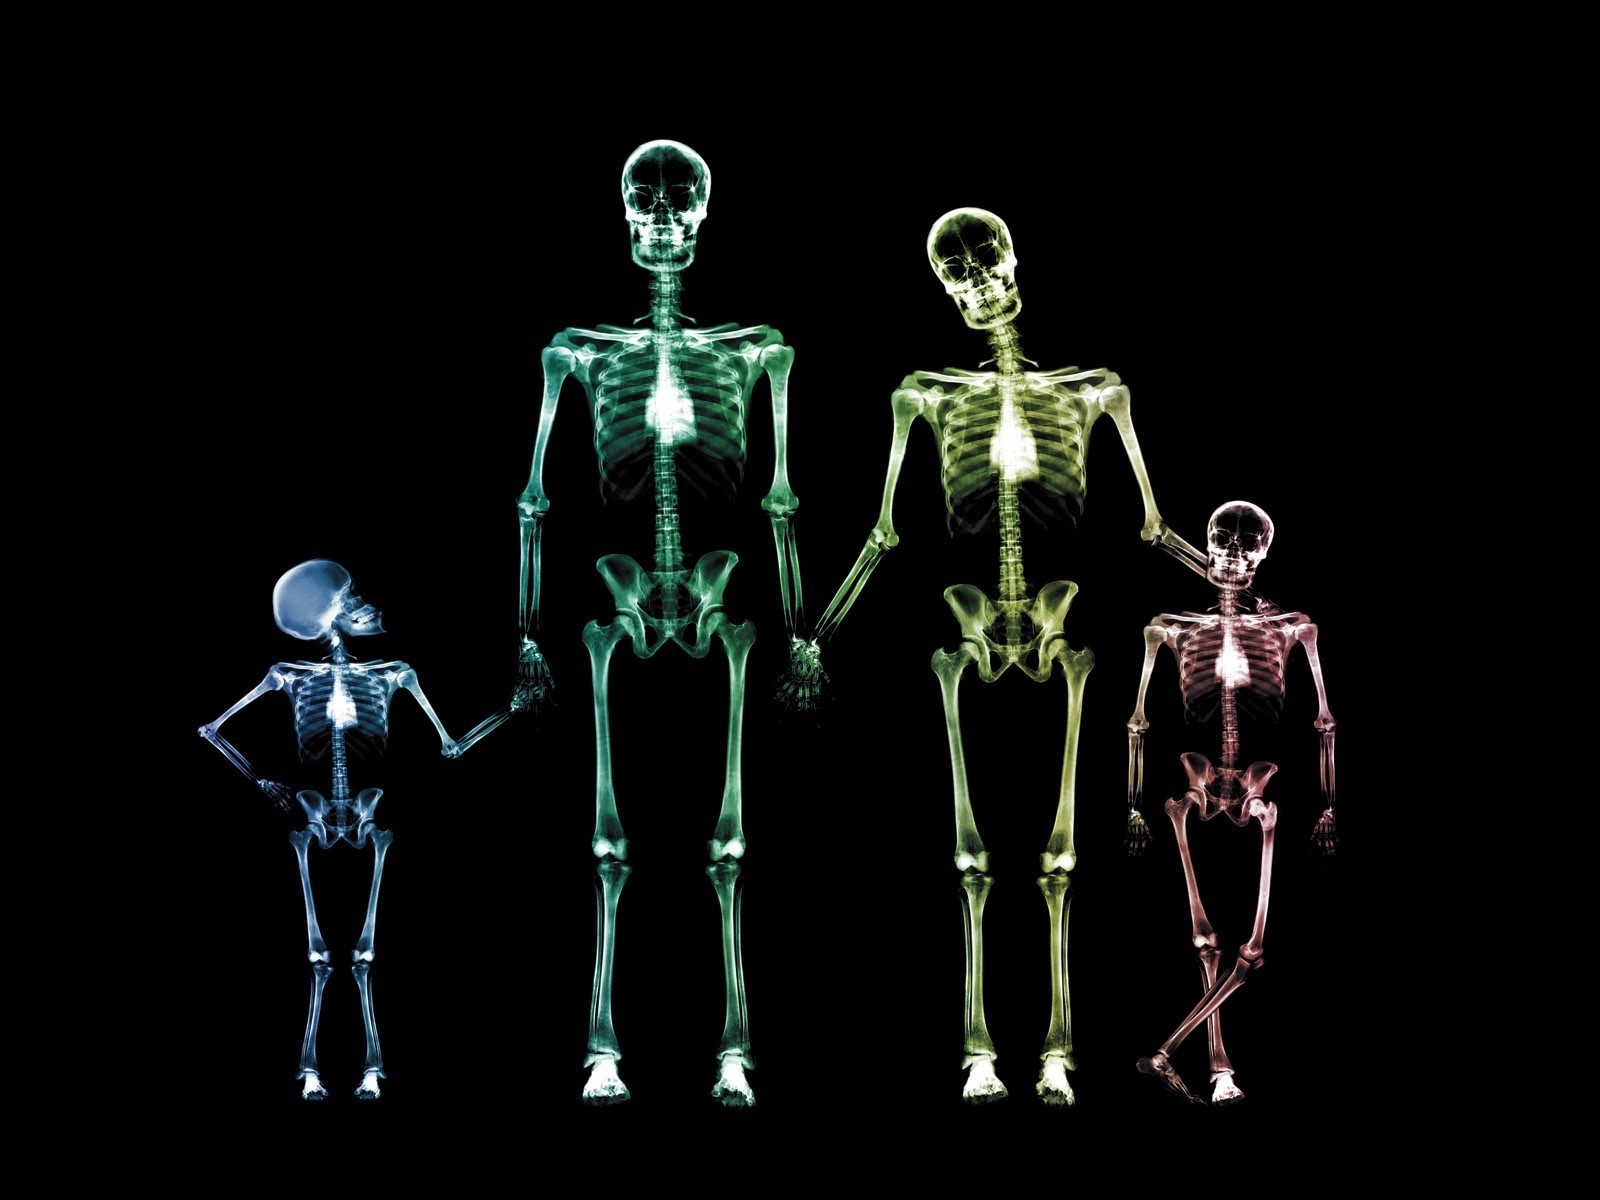 Family Skeletons for 1600 x 1200 resolution